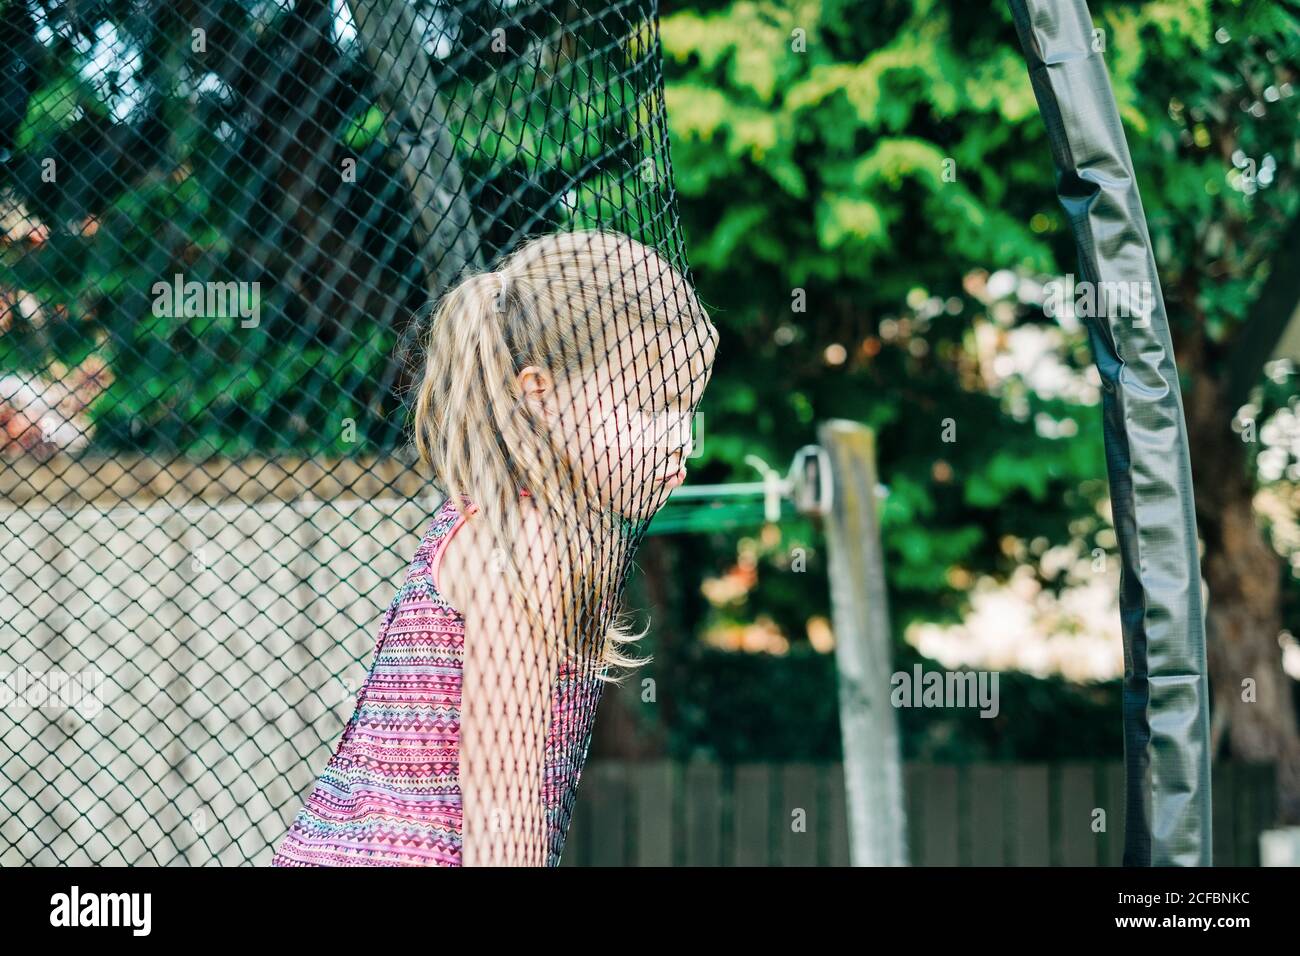 Jeune fille au visage grincheux penchée sur un filet de trampoline Banque D'Images